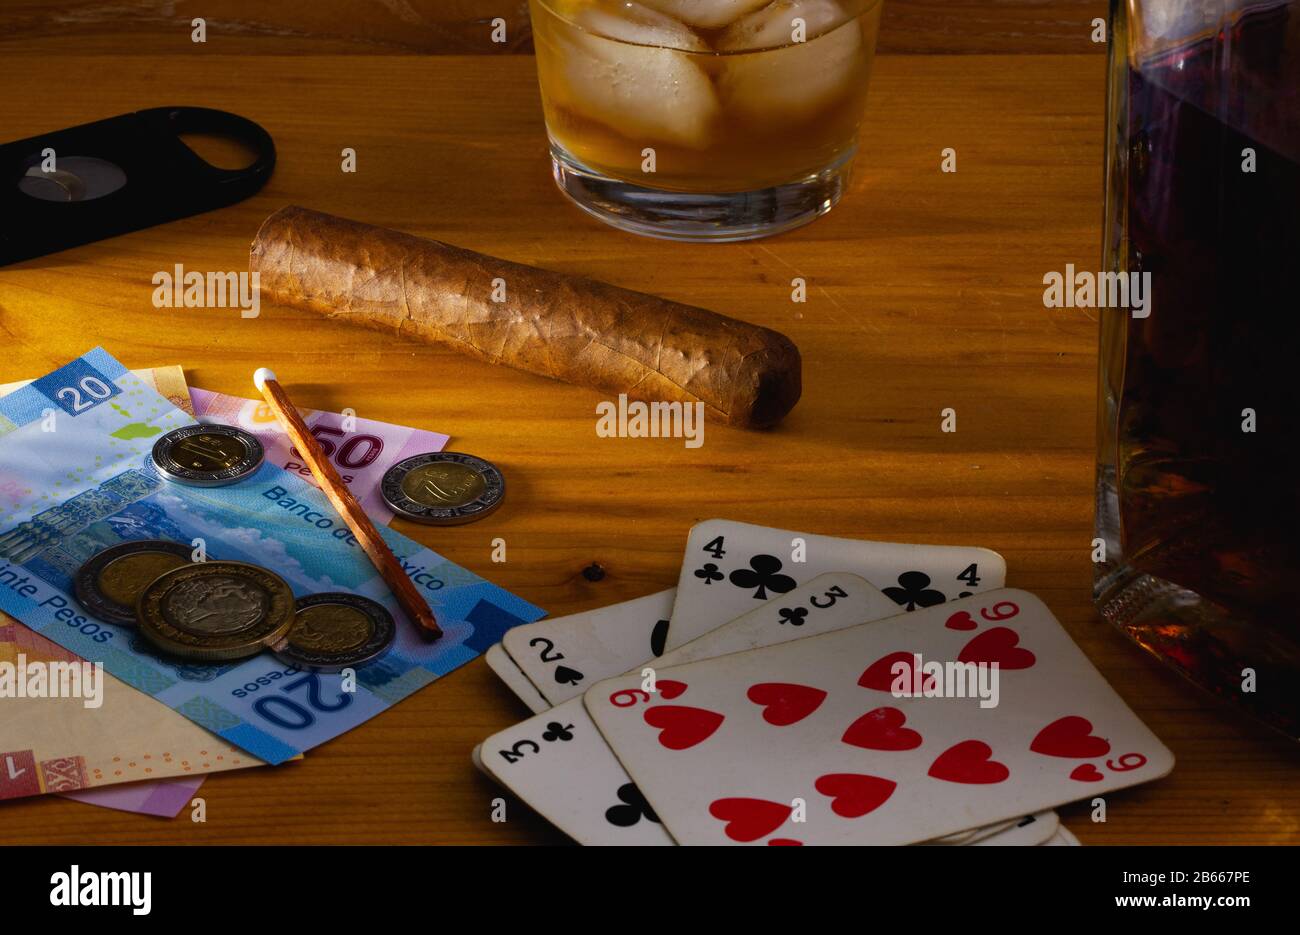 Jeu - tabac Cigar , cartes à jouer, whisky écossais et billets de banque au mexique sur la table en bois Banque D'Images